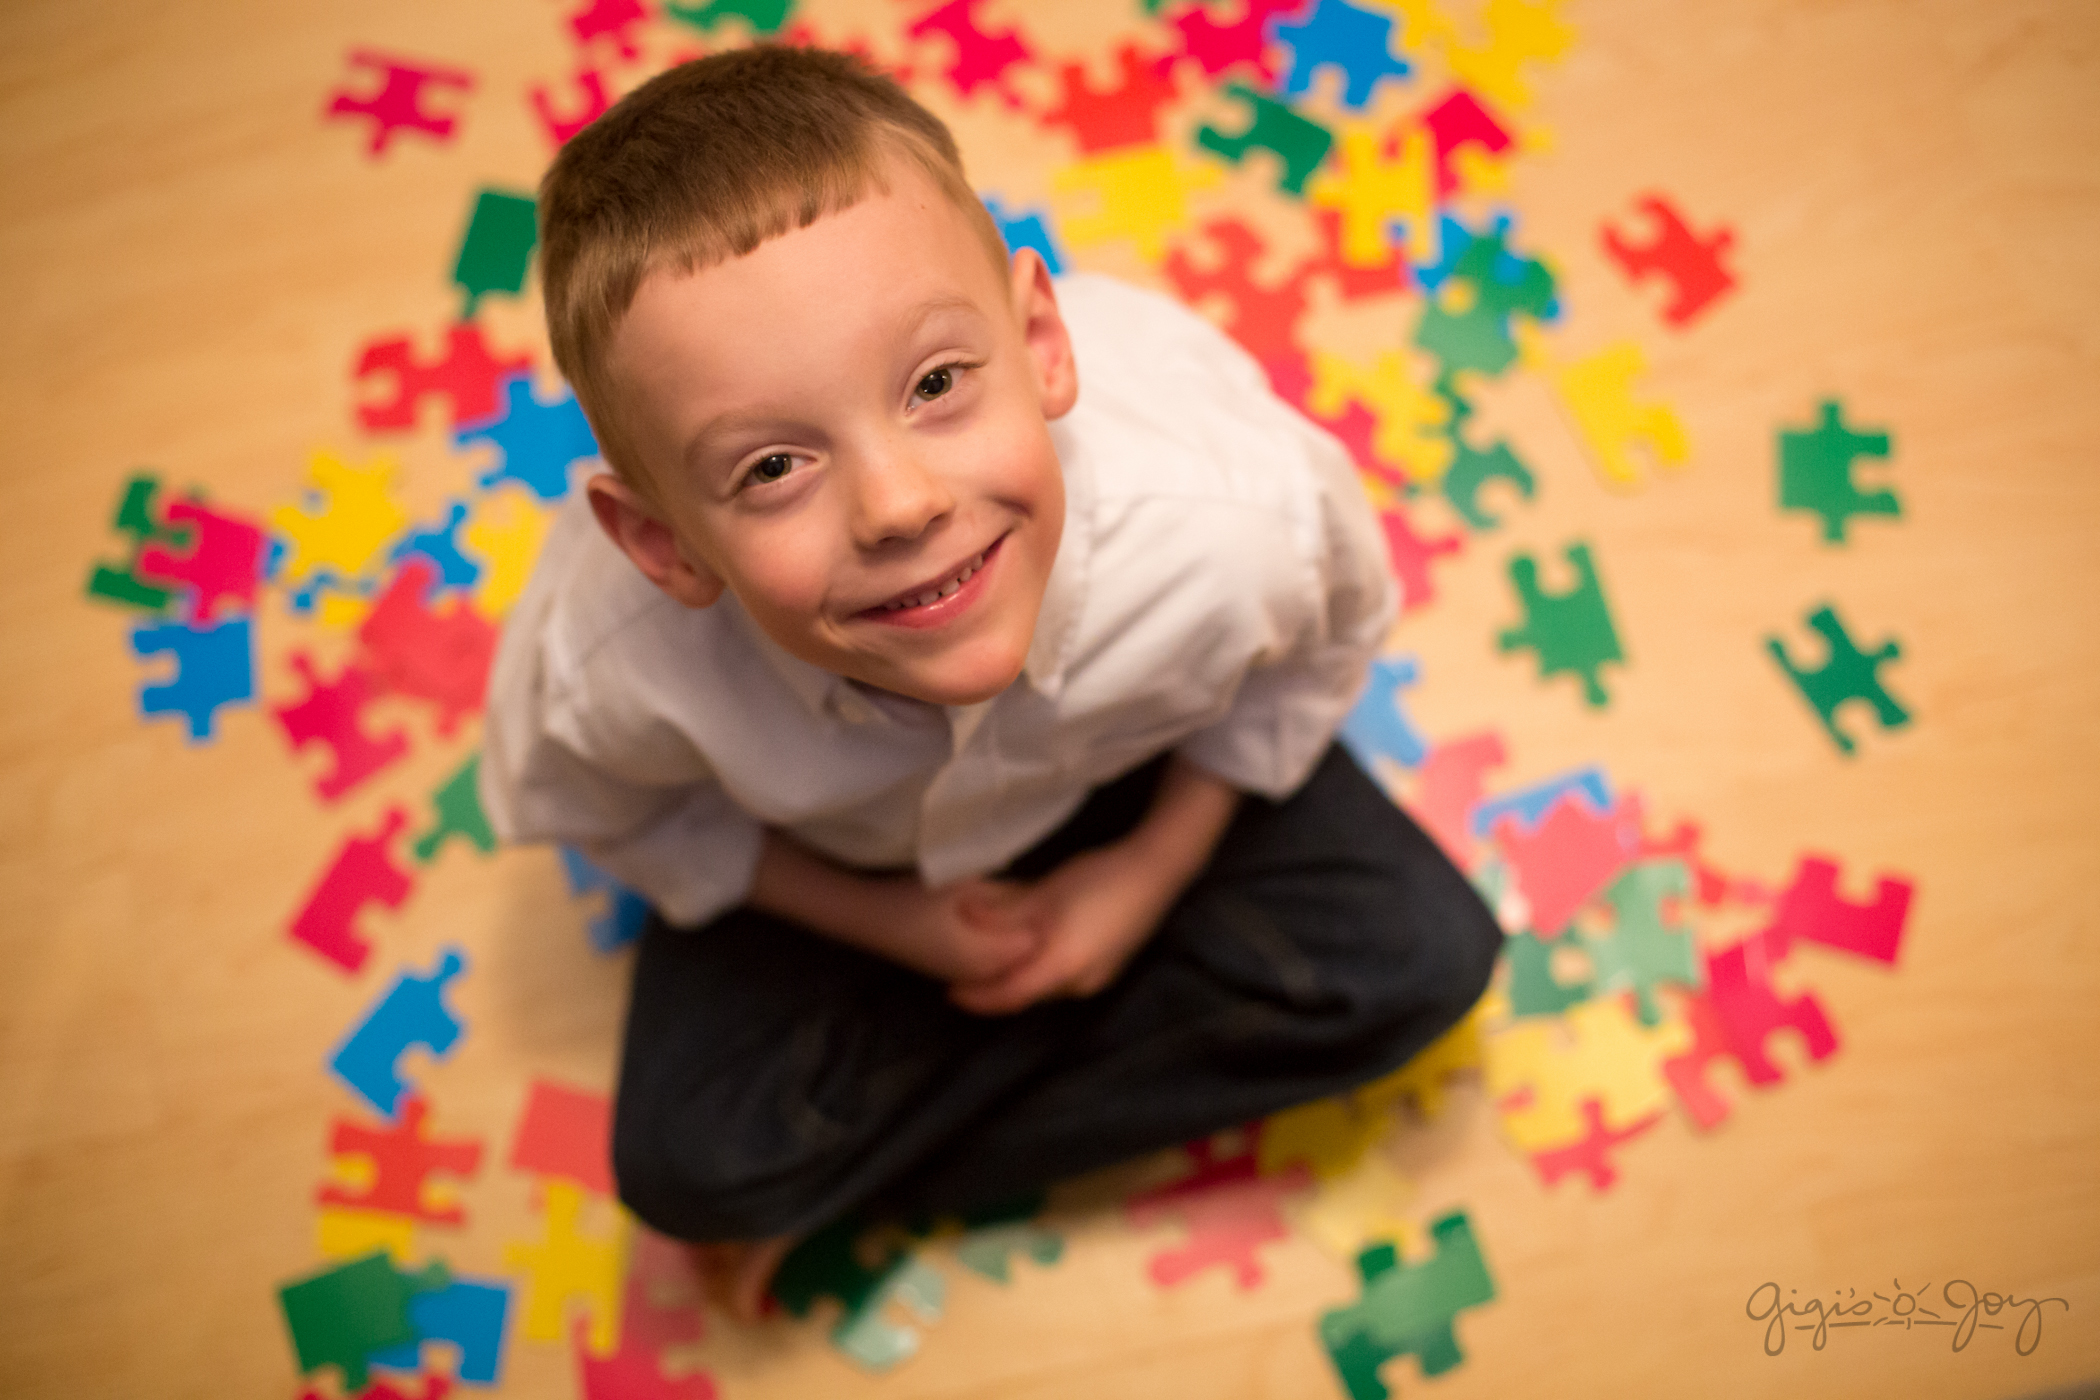 تغییرات مغز مشترک در کودکان مبتلا به اوتیسم، بیش فعالی و اختلال وسواس فکری ـ عملی